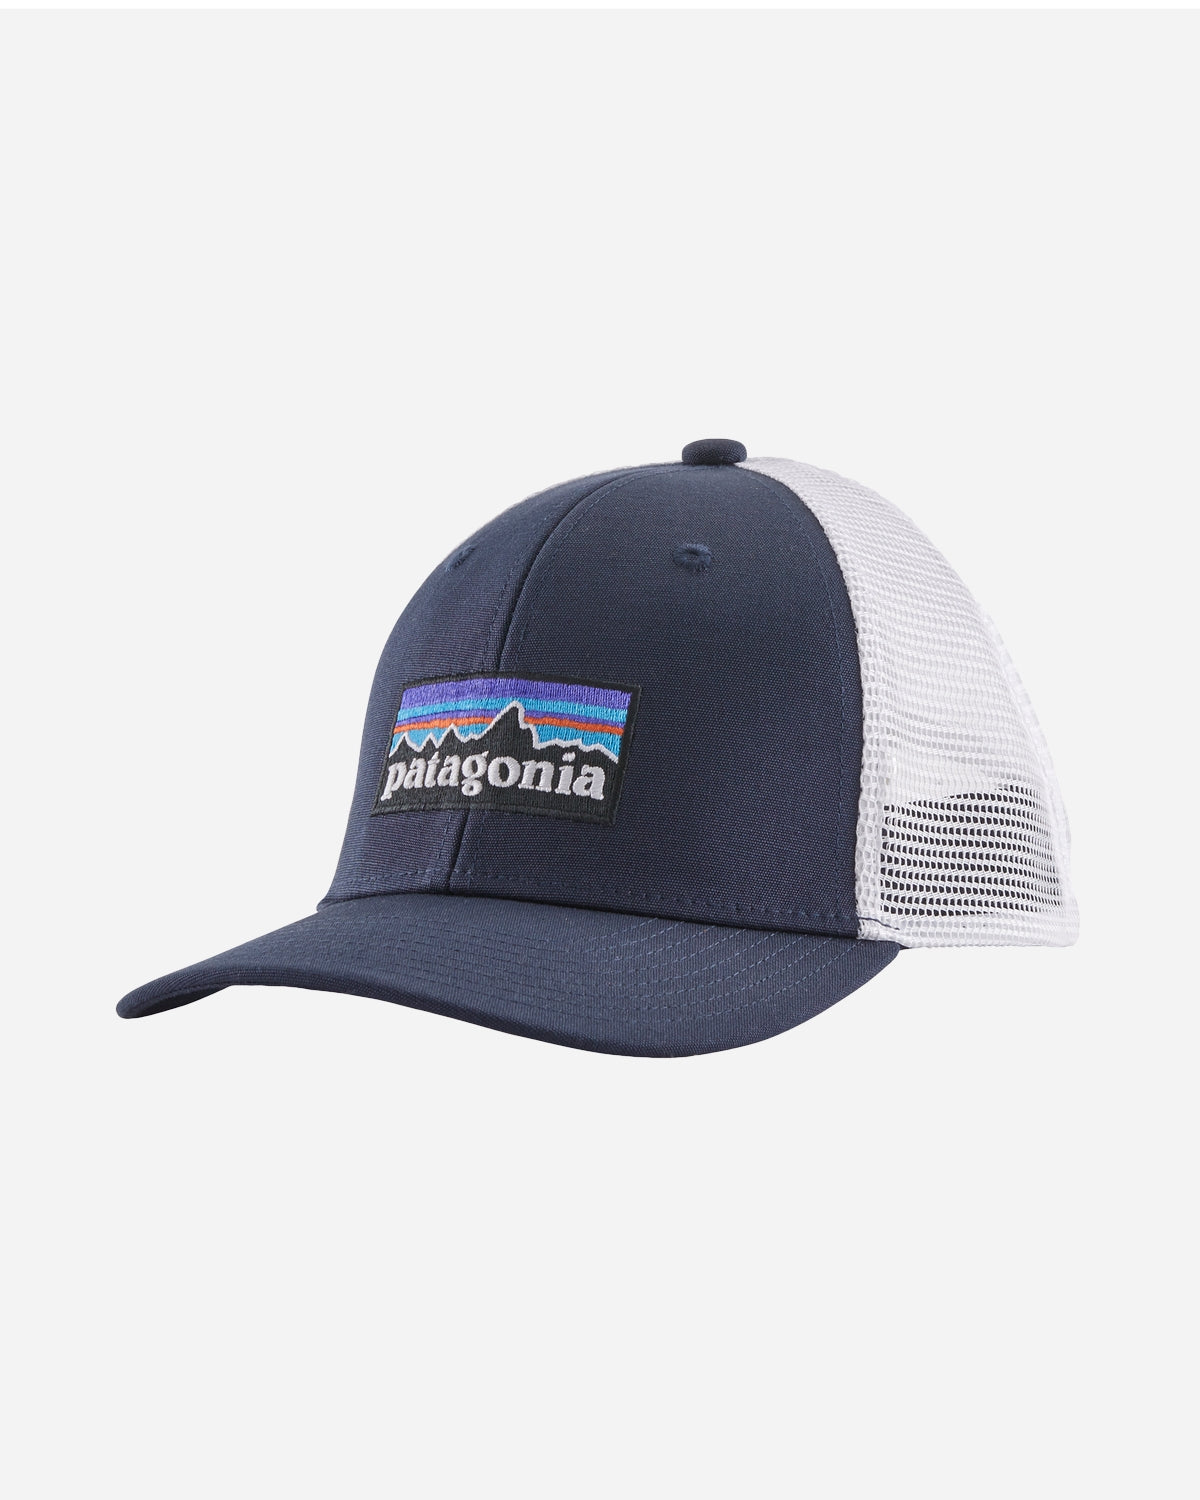 Teens Trucker Hat - P-6 Logo/Navy Blue - Patagonia - Munkstore.dk